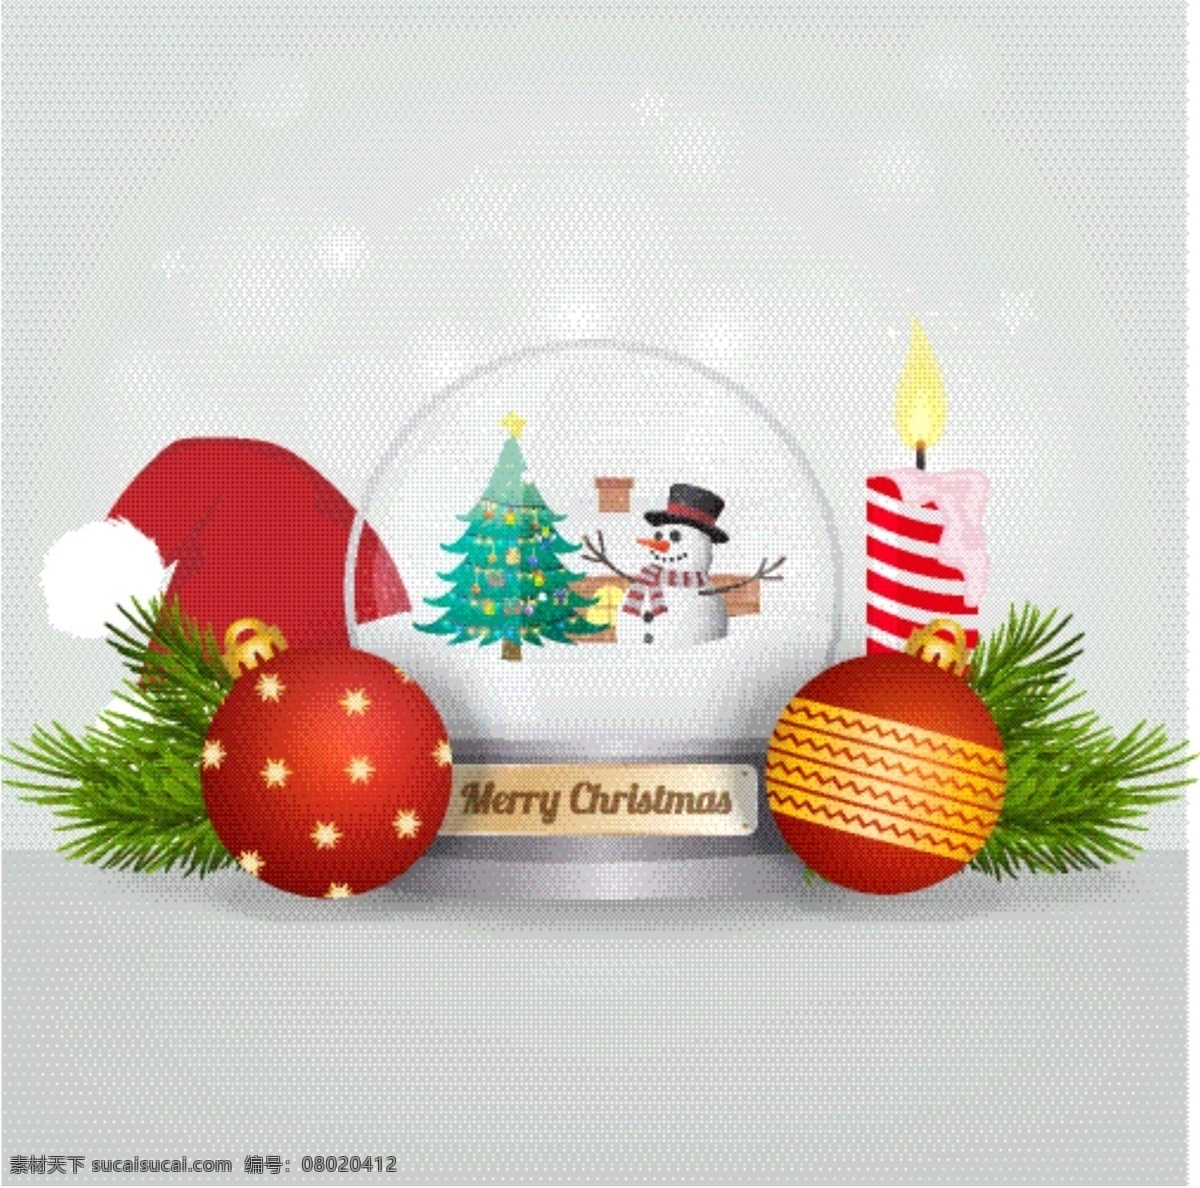 圣诞 雪球 球 元素 节日素材 圣诞节 圣诞素材 圣诞雪球 圣诞元素